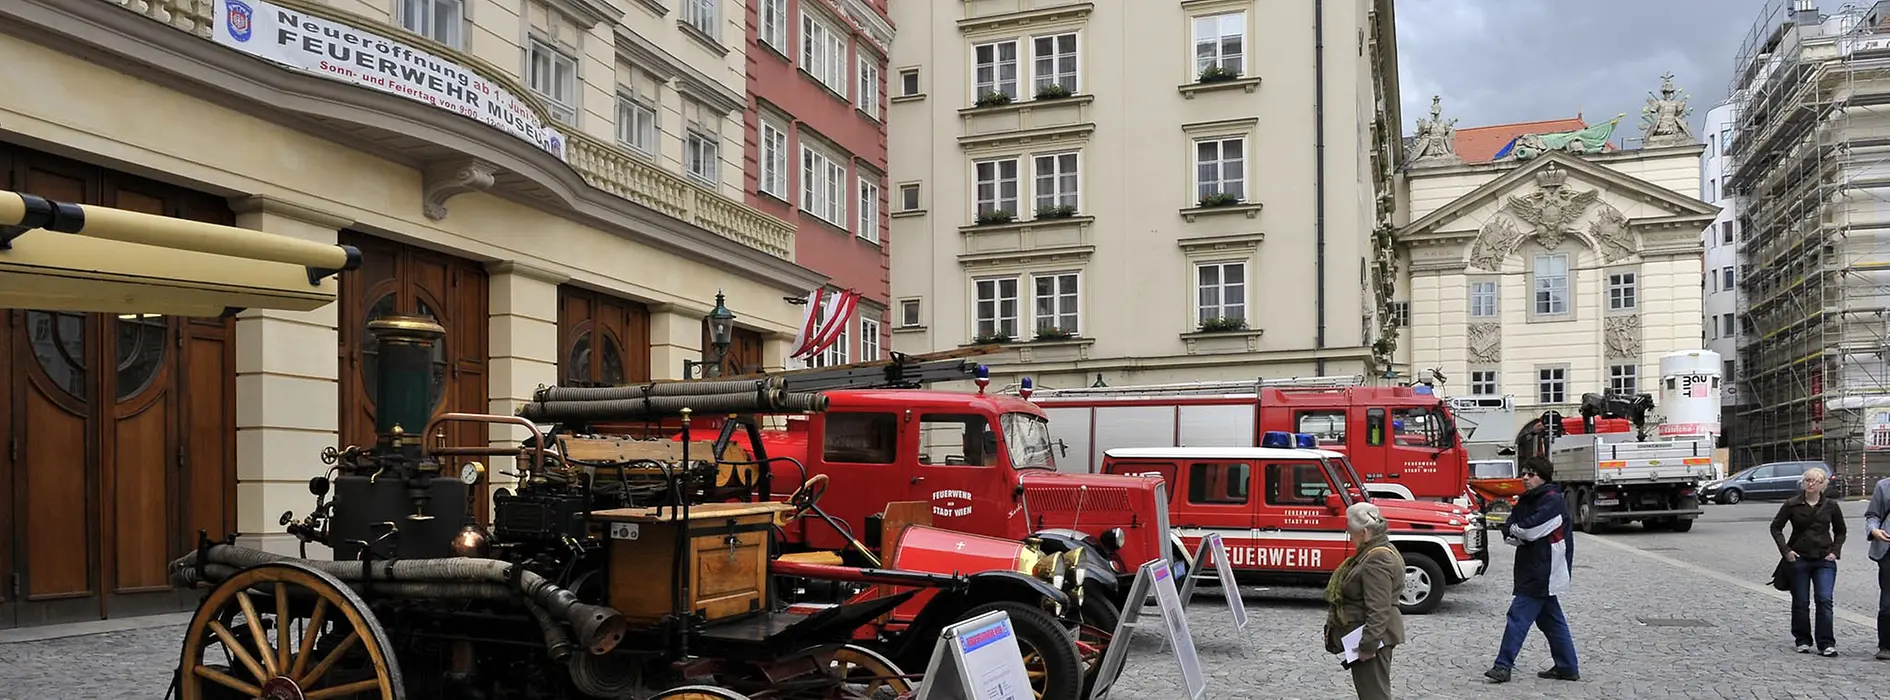 Вид снаружи на музей пожарного дела с историческими пожарными машинами